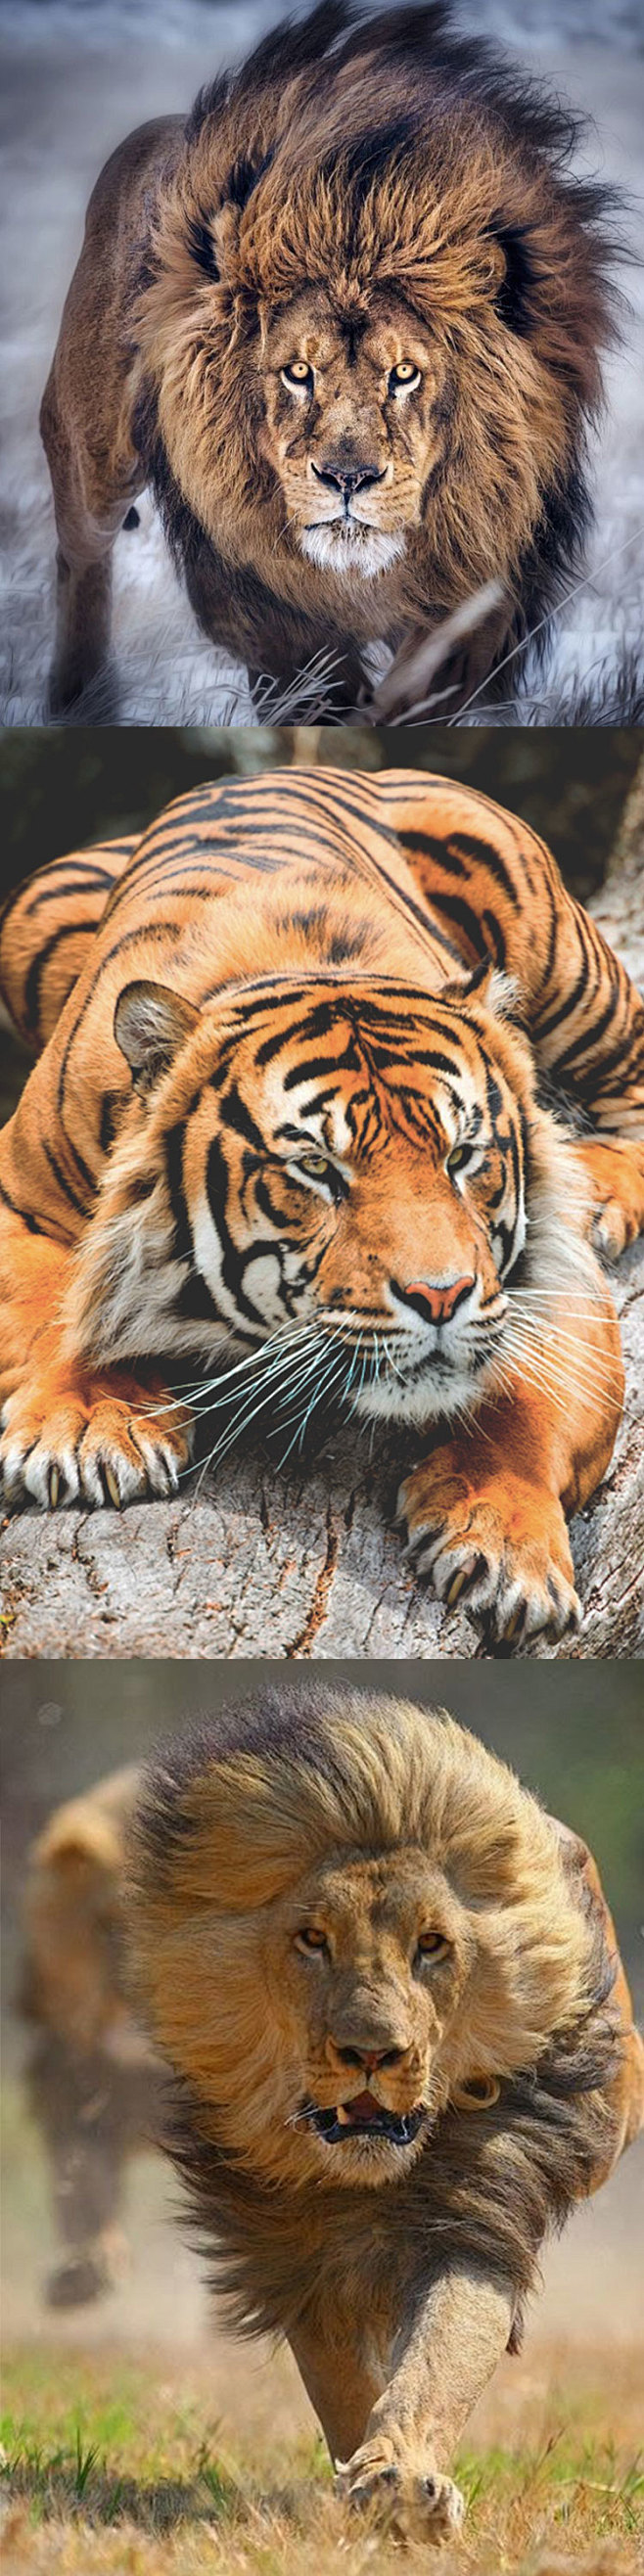 361大猫摄影电子图片素材狮子老虎猎豹子...